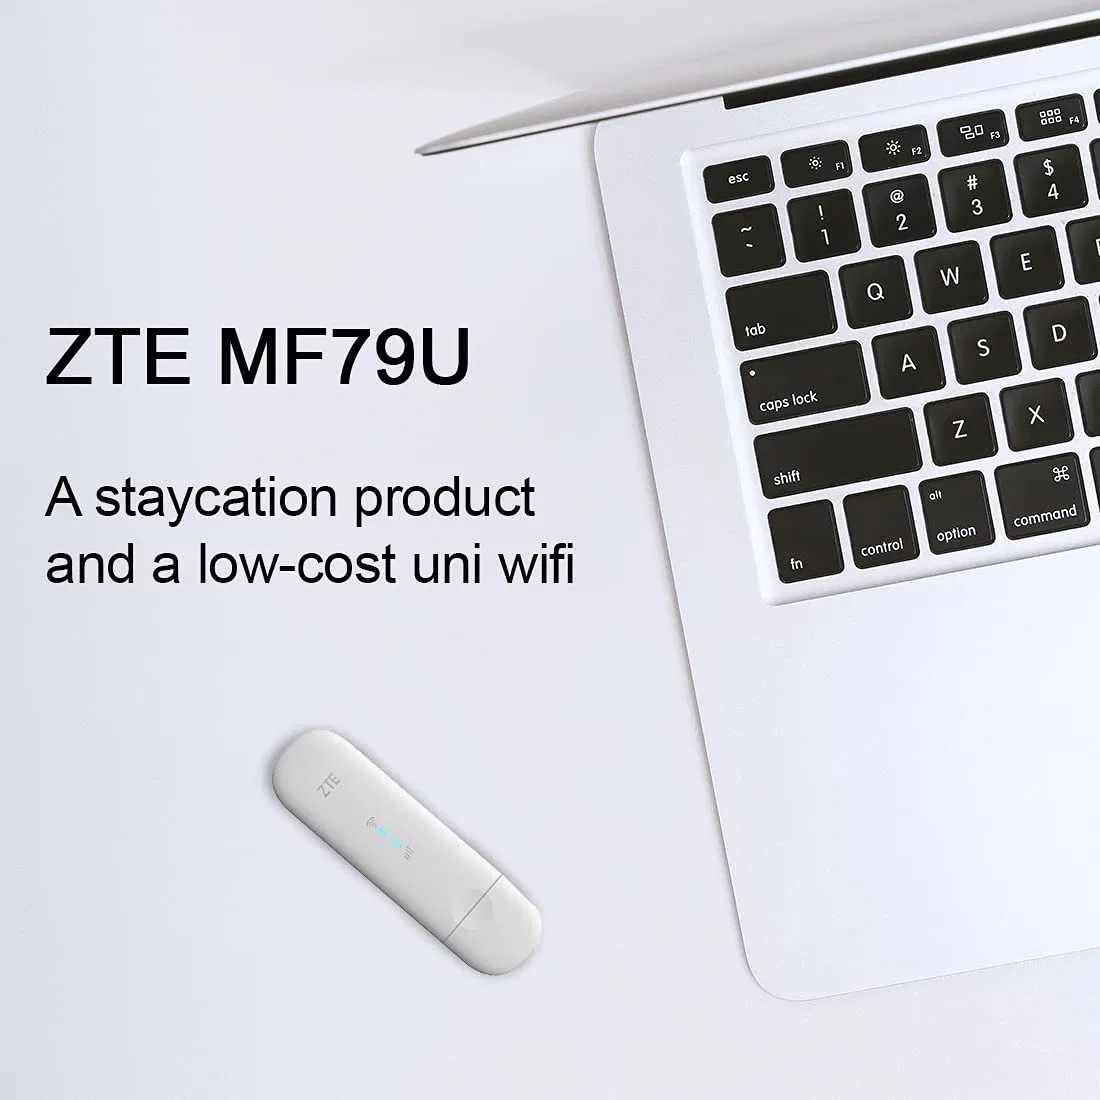 Mf79u Desbloqueada WiFi USB Modemperfect Staycation producto y bajo costo 4G Puertos de antena externa WiFi